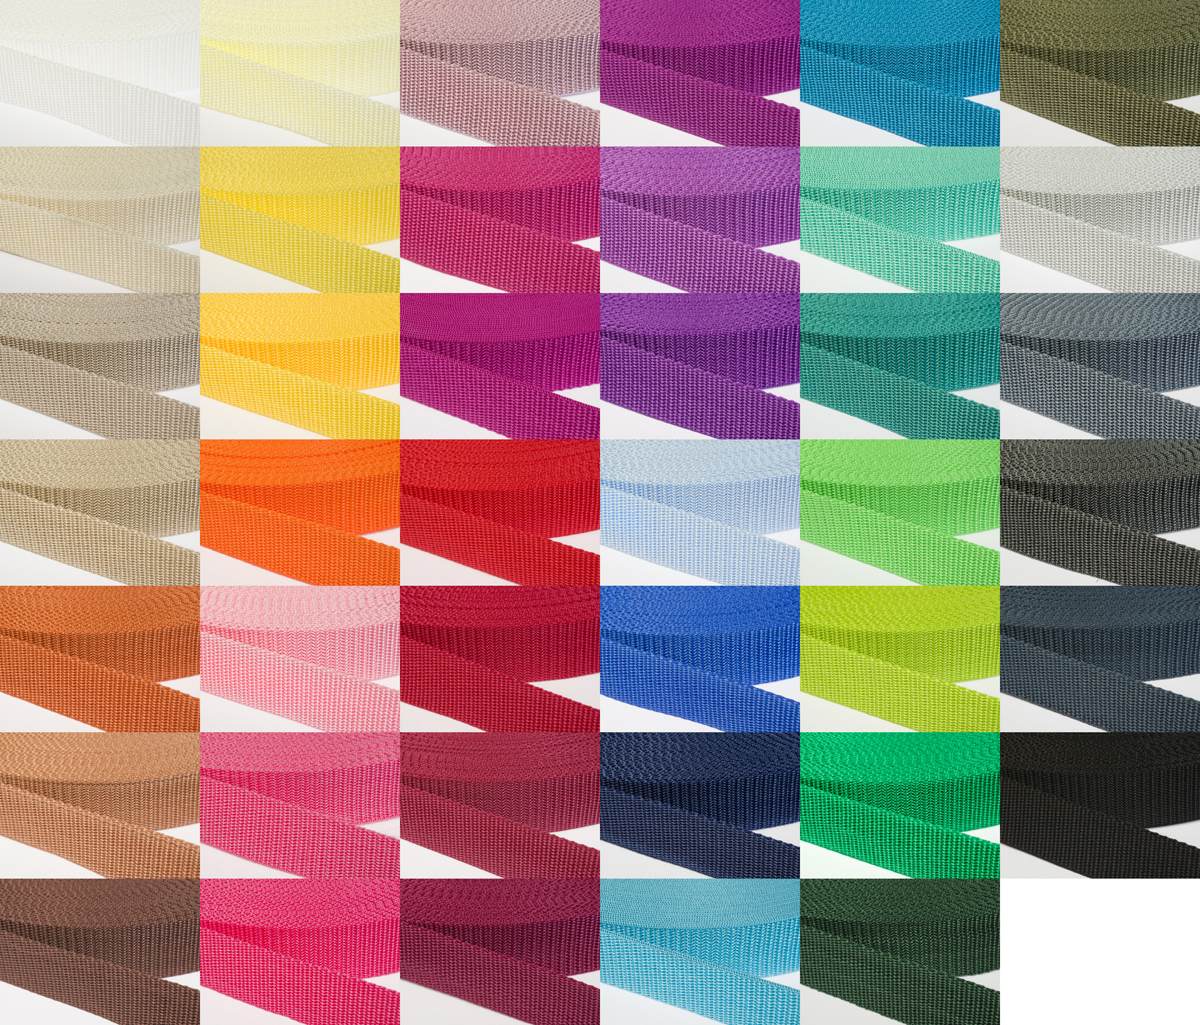 Gurtband 30mm breit aus Polypropylen in 41 Farben 05 - ockerbraun 50 Meter